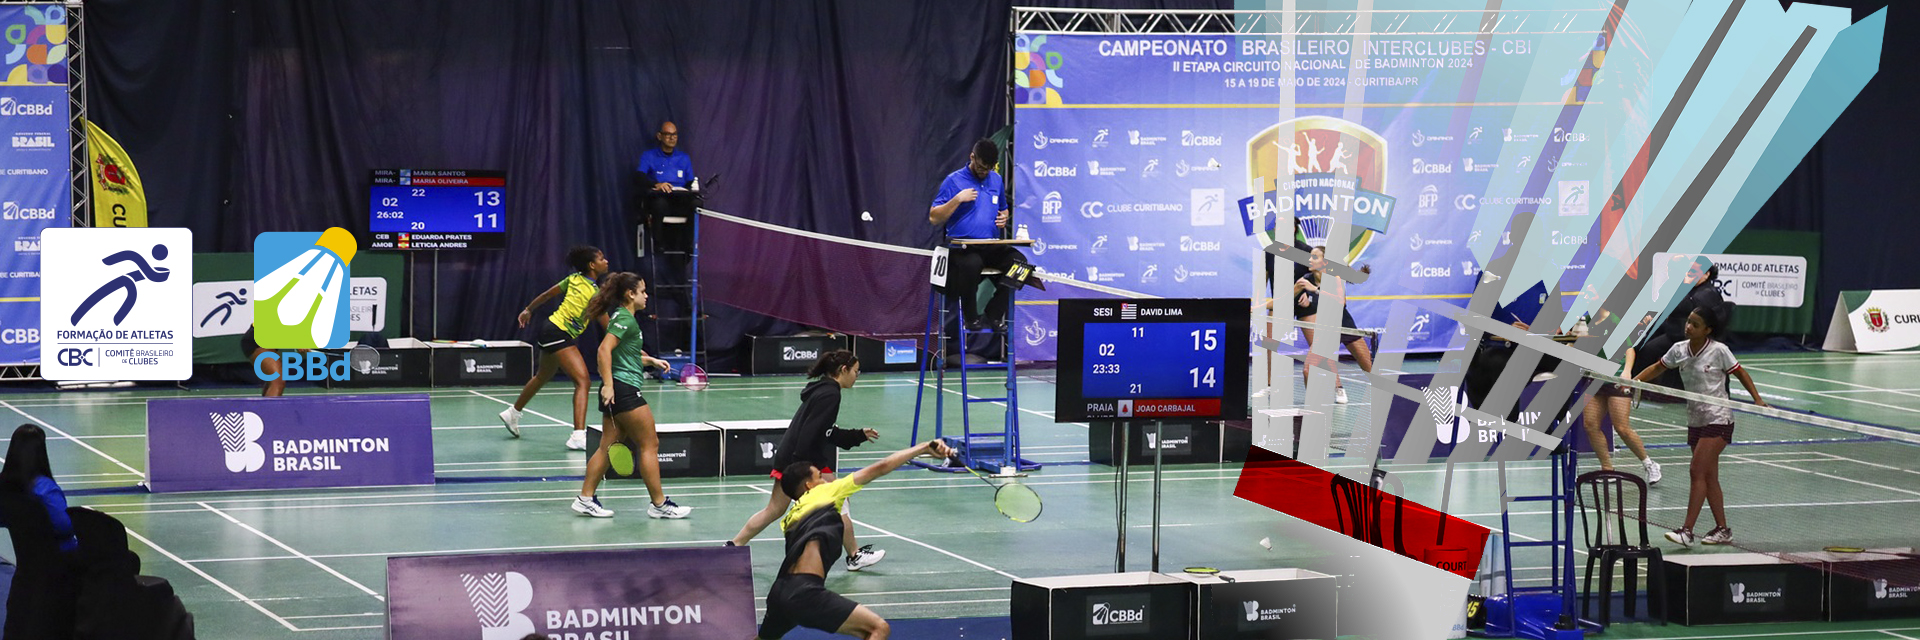 Festival de Badminton em Curitiba/PR: Atletas Olímpicos e Jovens Promessas competem na 2ª Etapa do CBI® 